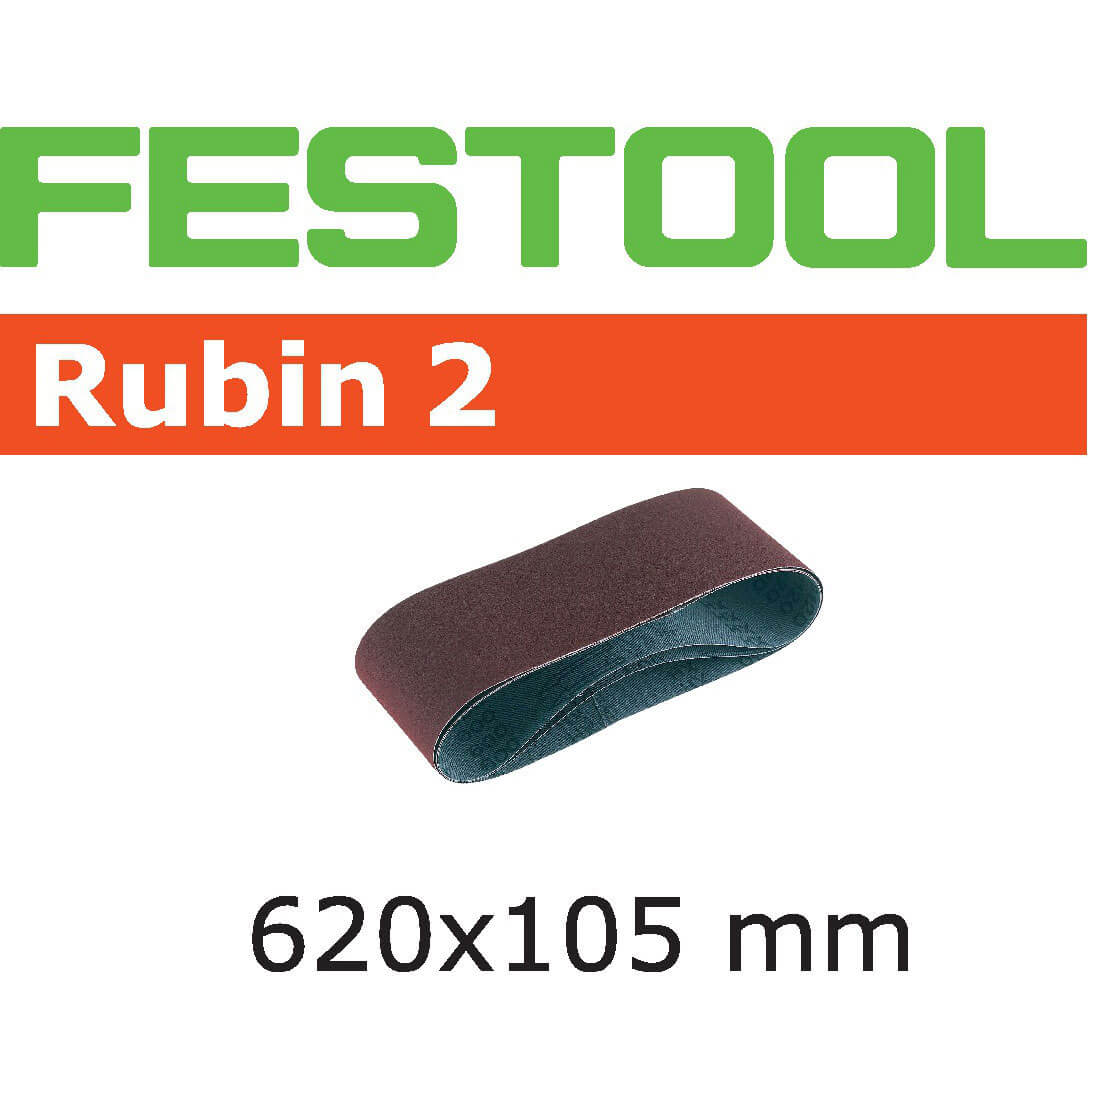 Image of Festool 105mm x 620mm Rubin 2 Abrasive Sanding Belt 105mm x 620mm 100g Pack of 10